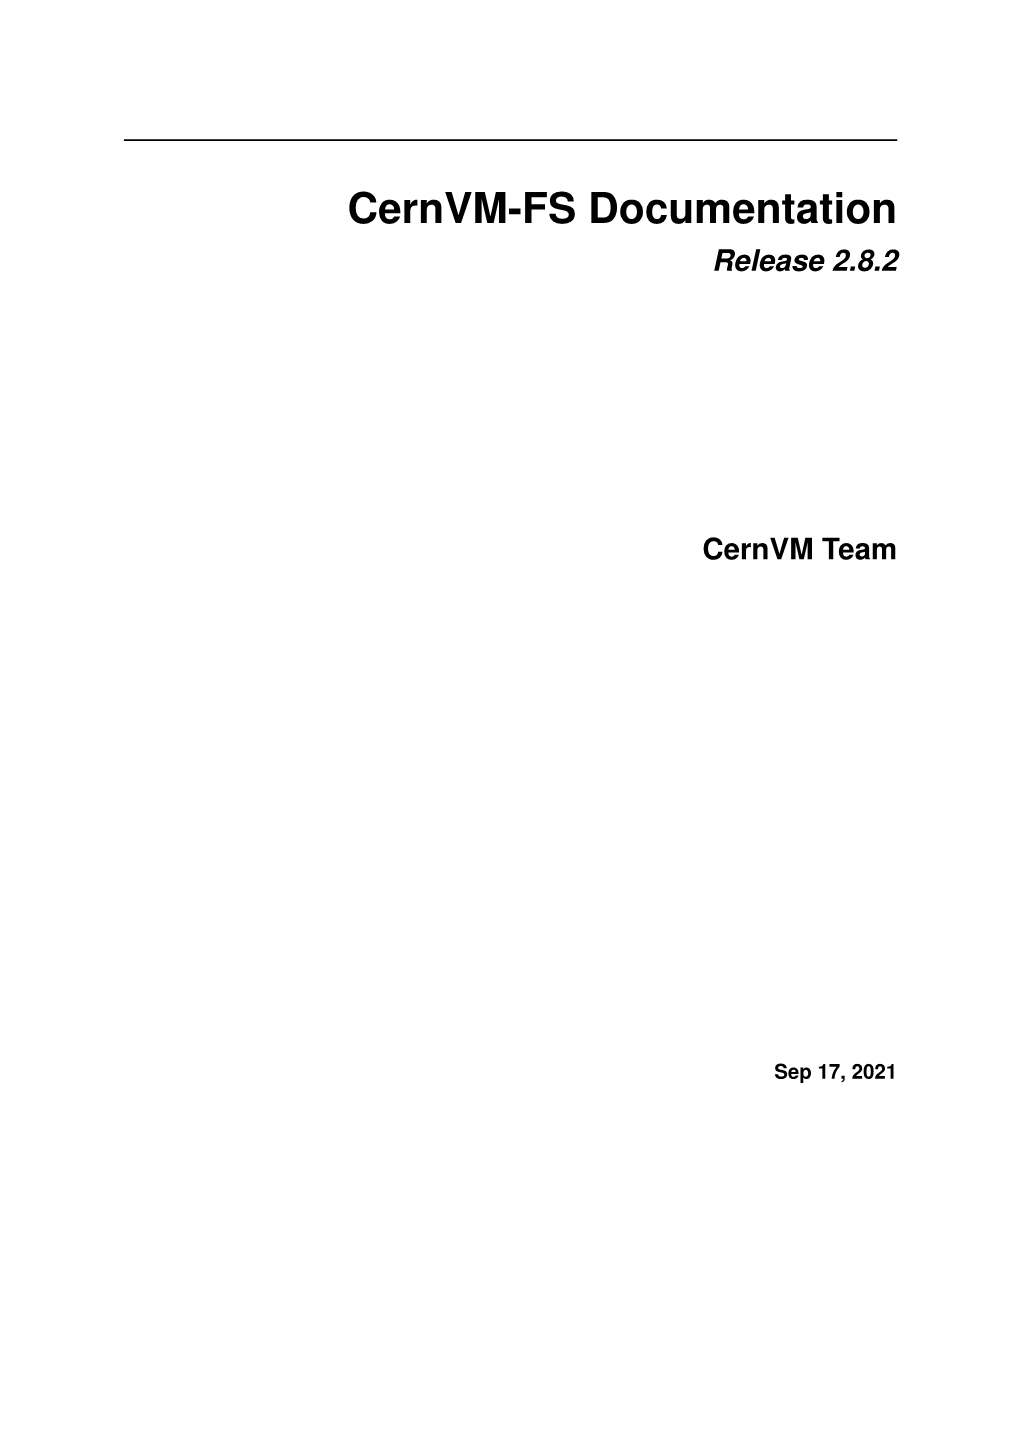 Cernvm-FS Documentation Release 2.8.2